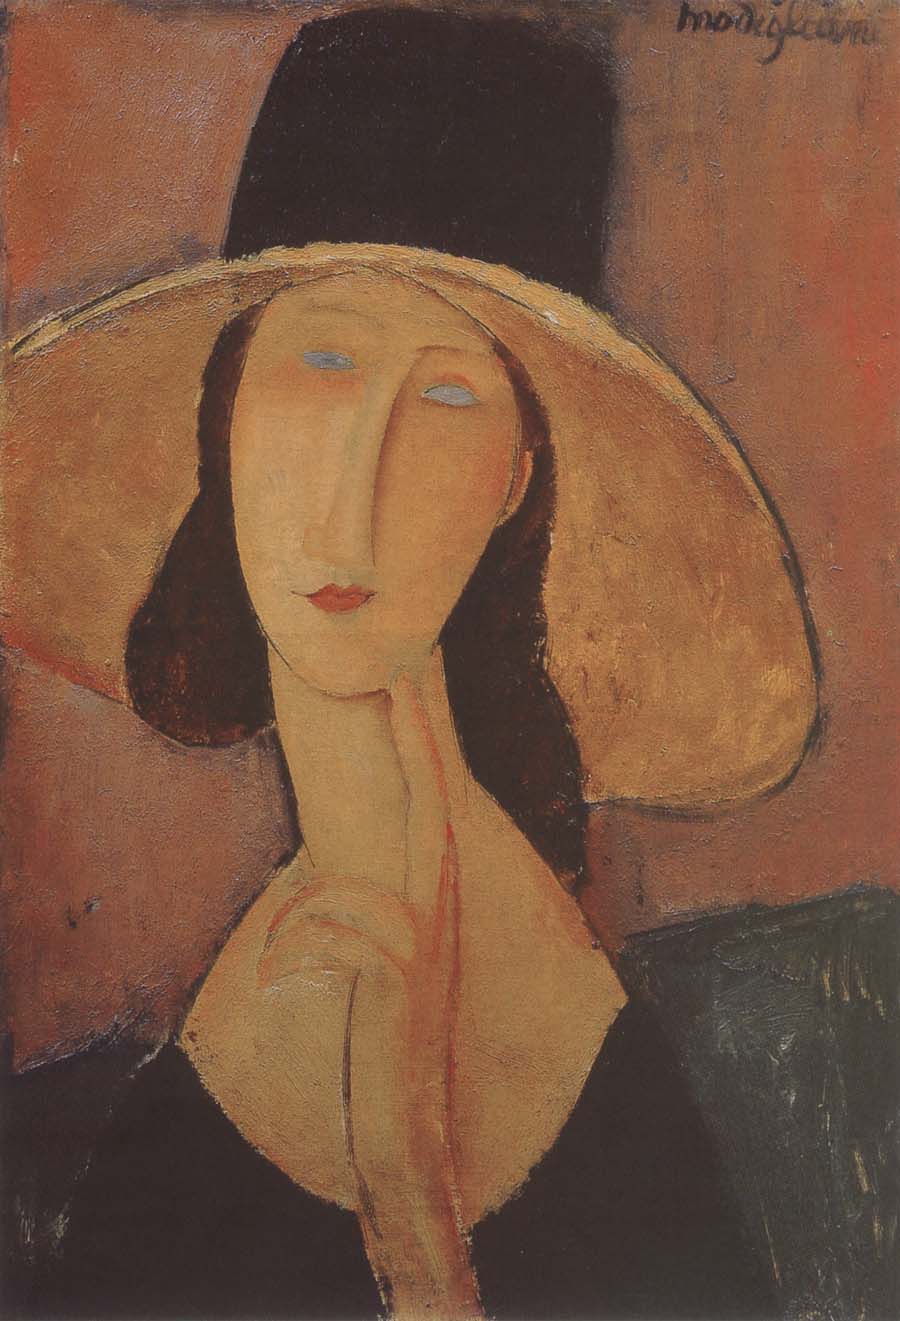 Portrait of Jeanne hebuterne iwth large hat